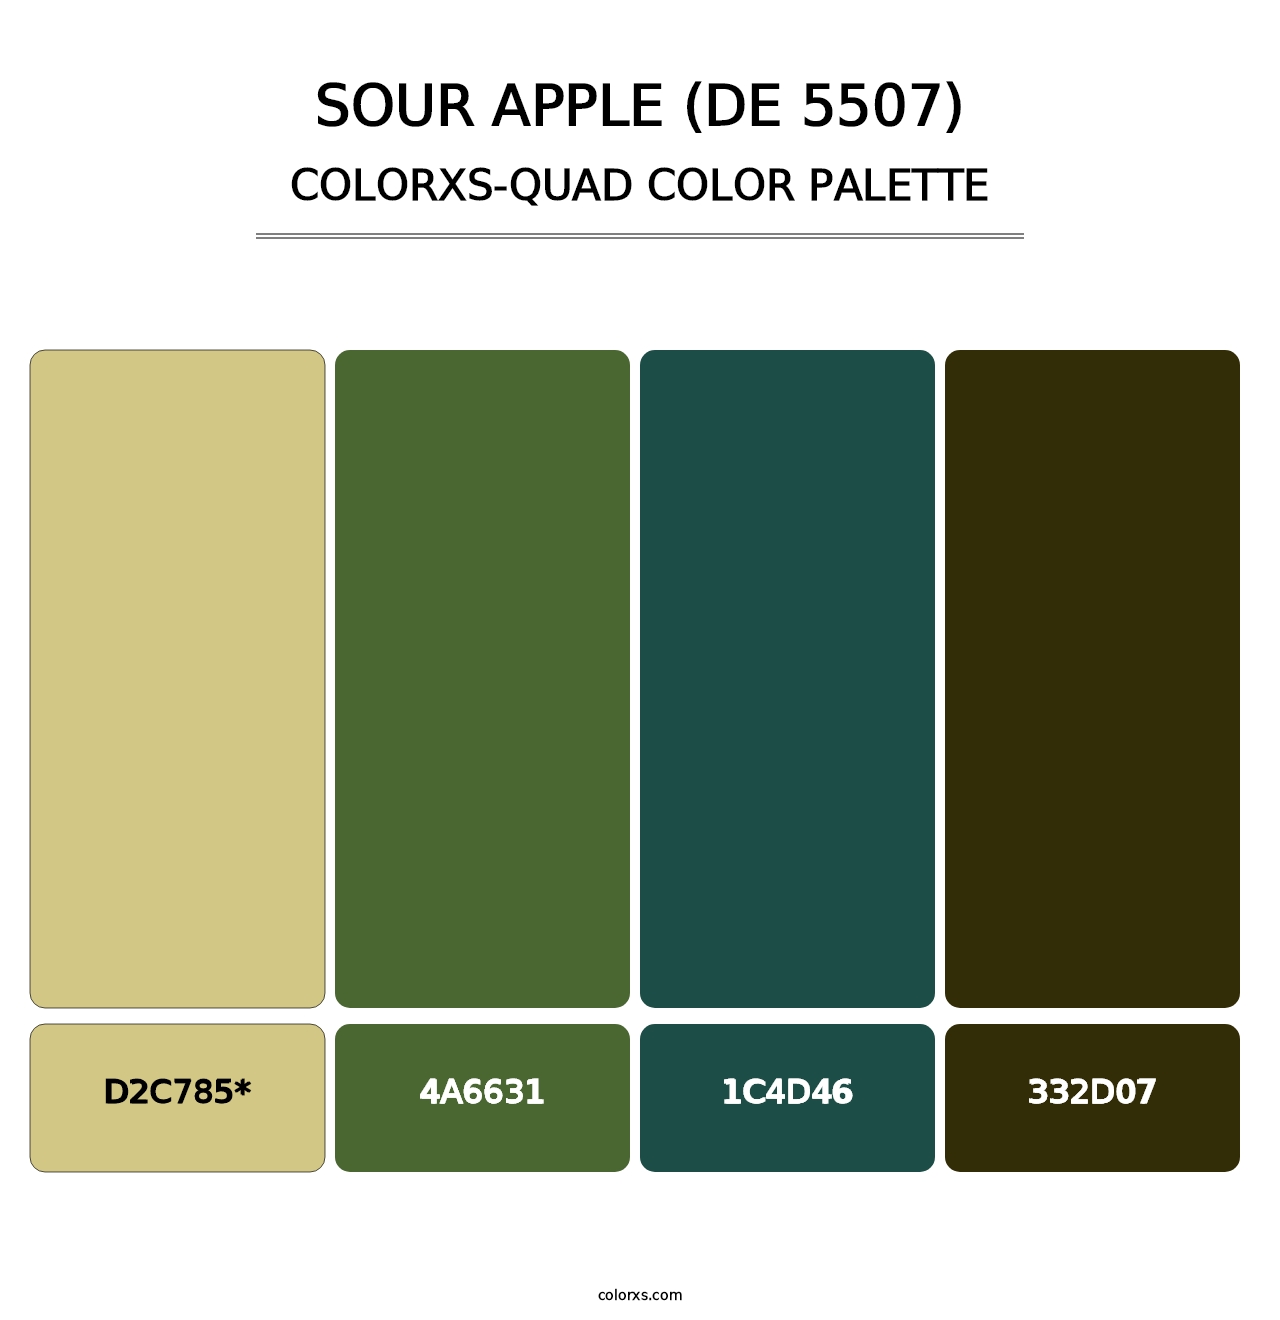 Sour Apple (DE 5507) - Colorxs Quad Palette